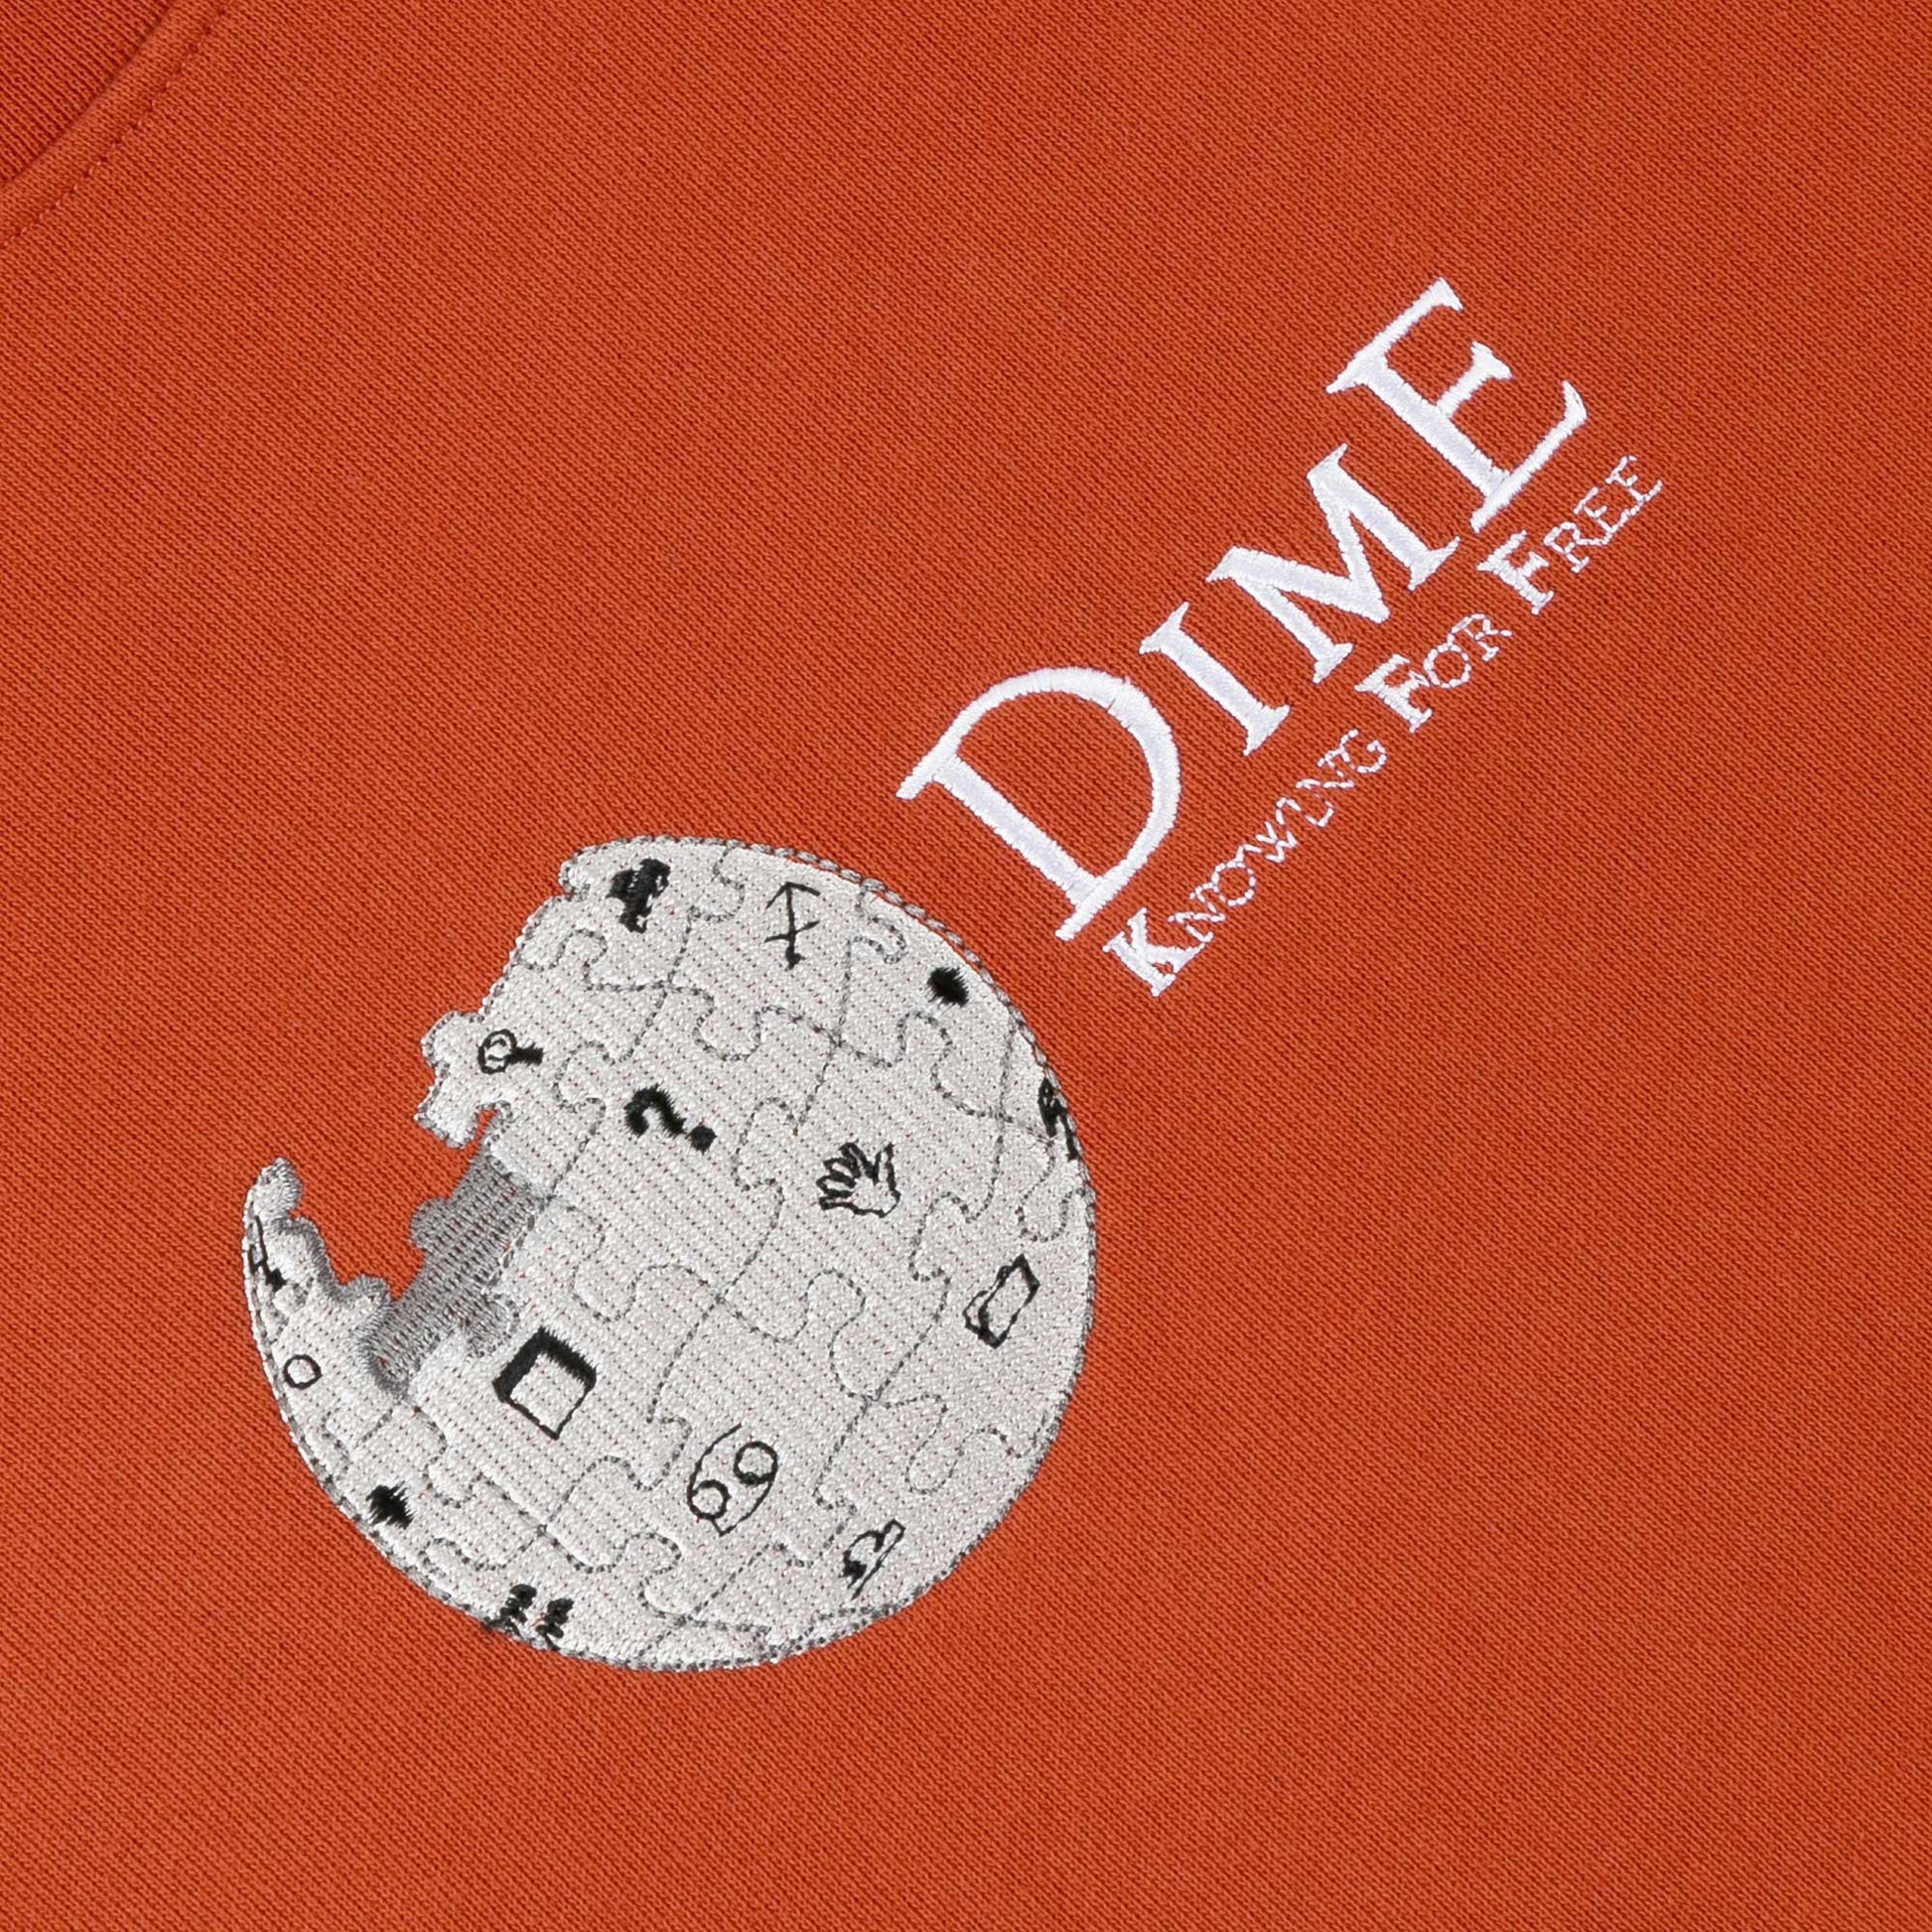 Dime Dimepedia Crewneck, autumn red - Tiki Room Skateboards - 2